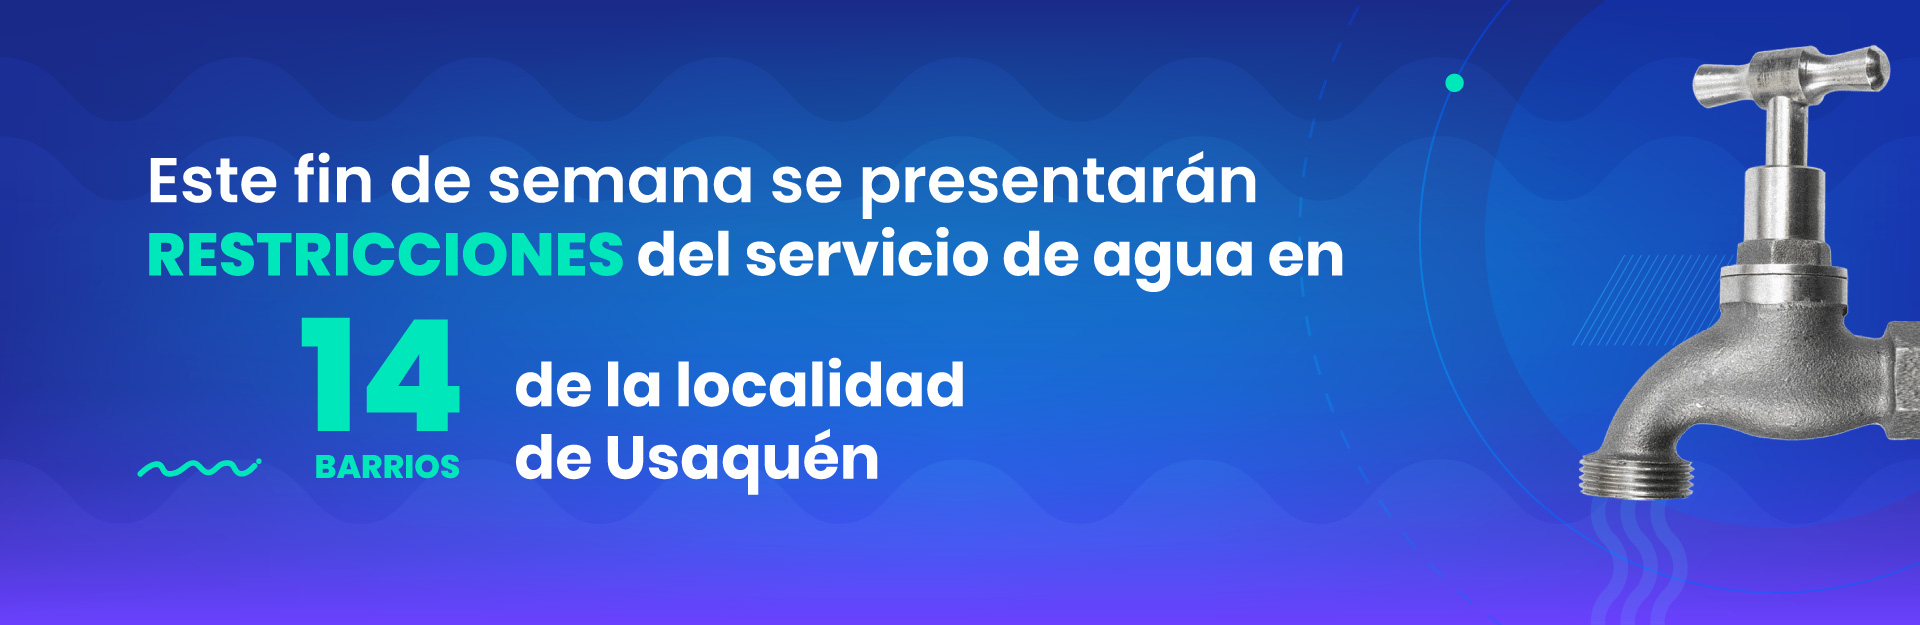 Este fin de semana se presentarán restricciones del servicio de agua en 14 barrios de la localidad de Usaquén